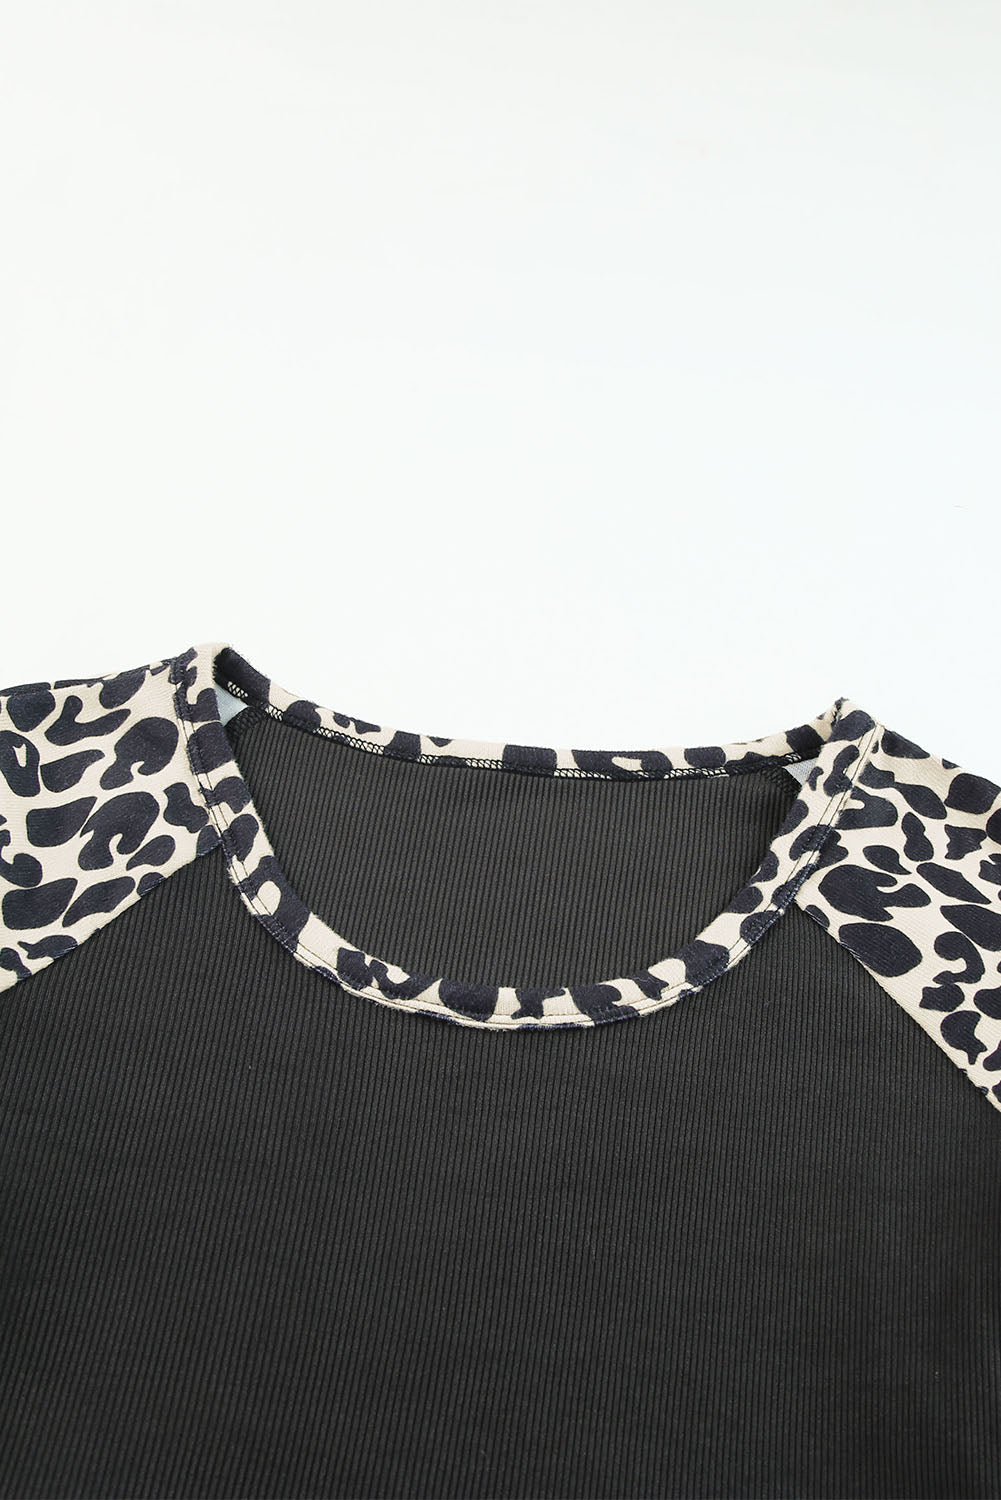 Haut léopard noir à manches courtes et découpes en blocs de couleurs